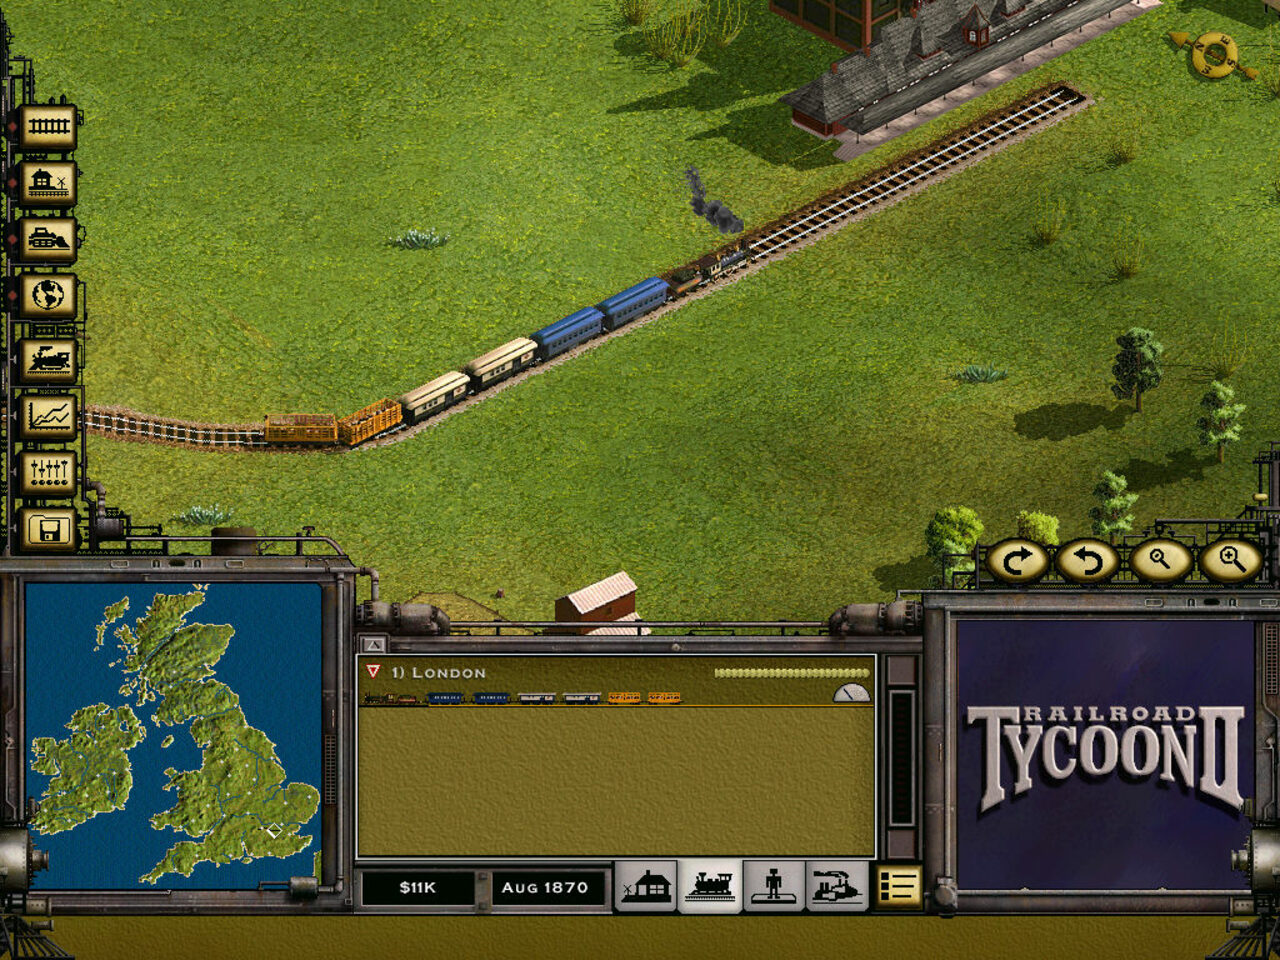 Railroad Tycoon II PlayStation